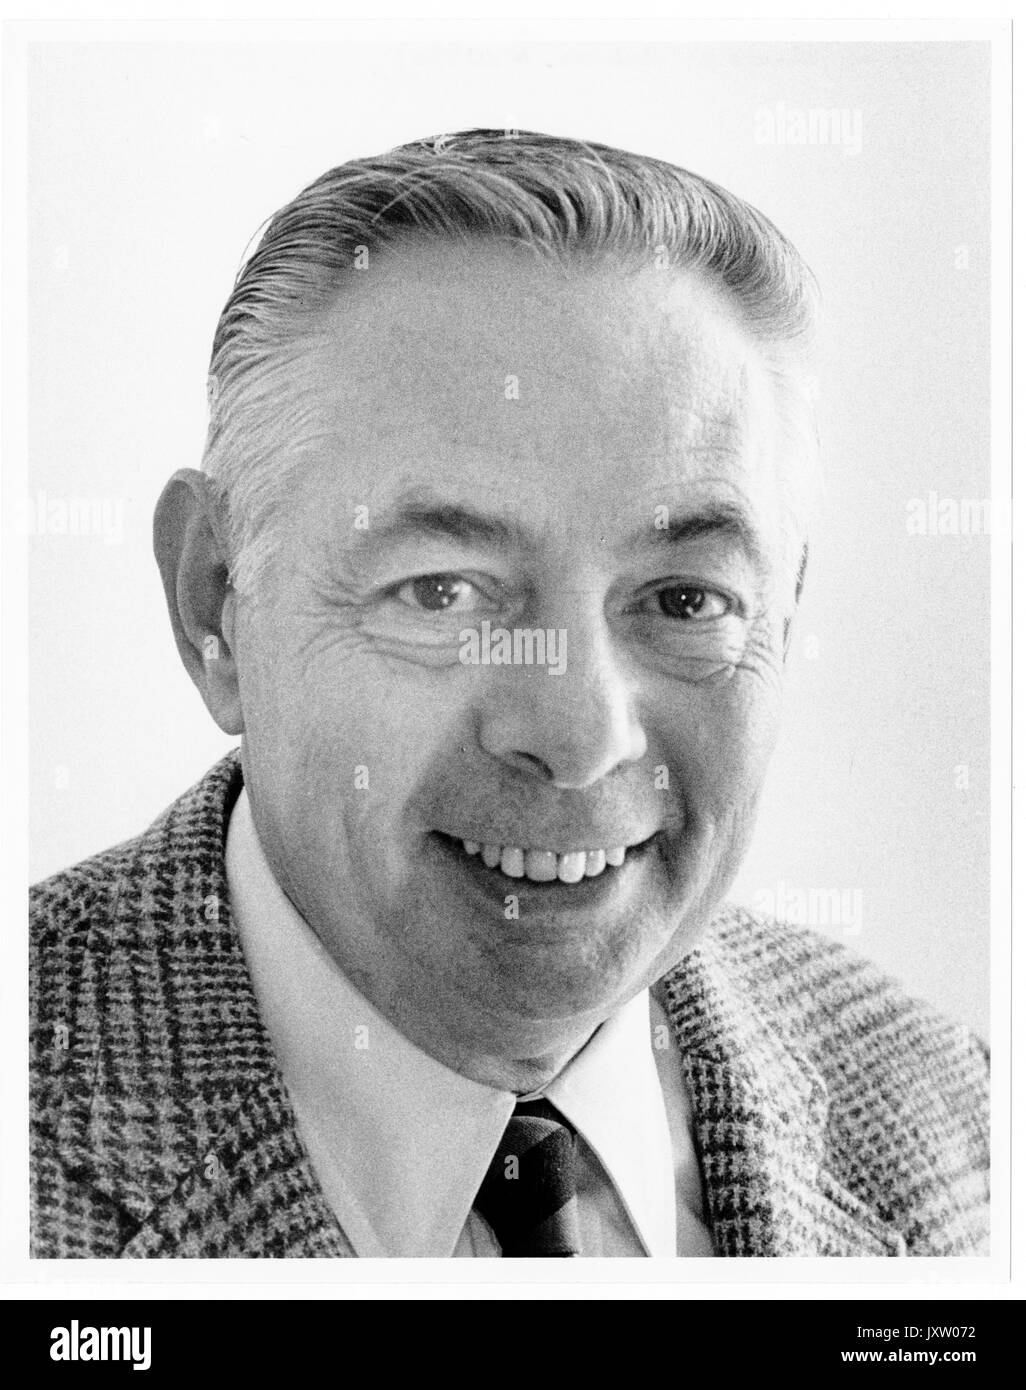 Donald g bickert, ritratto fotografia, spalle, full face, c di 55 anni di età, 1985. Foto Stock